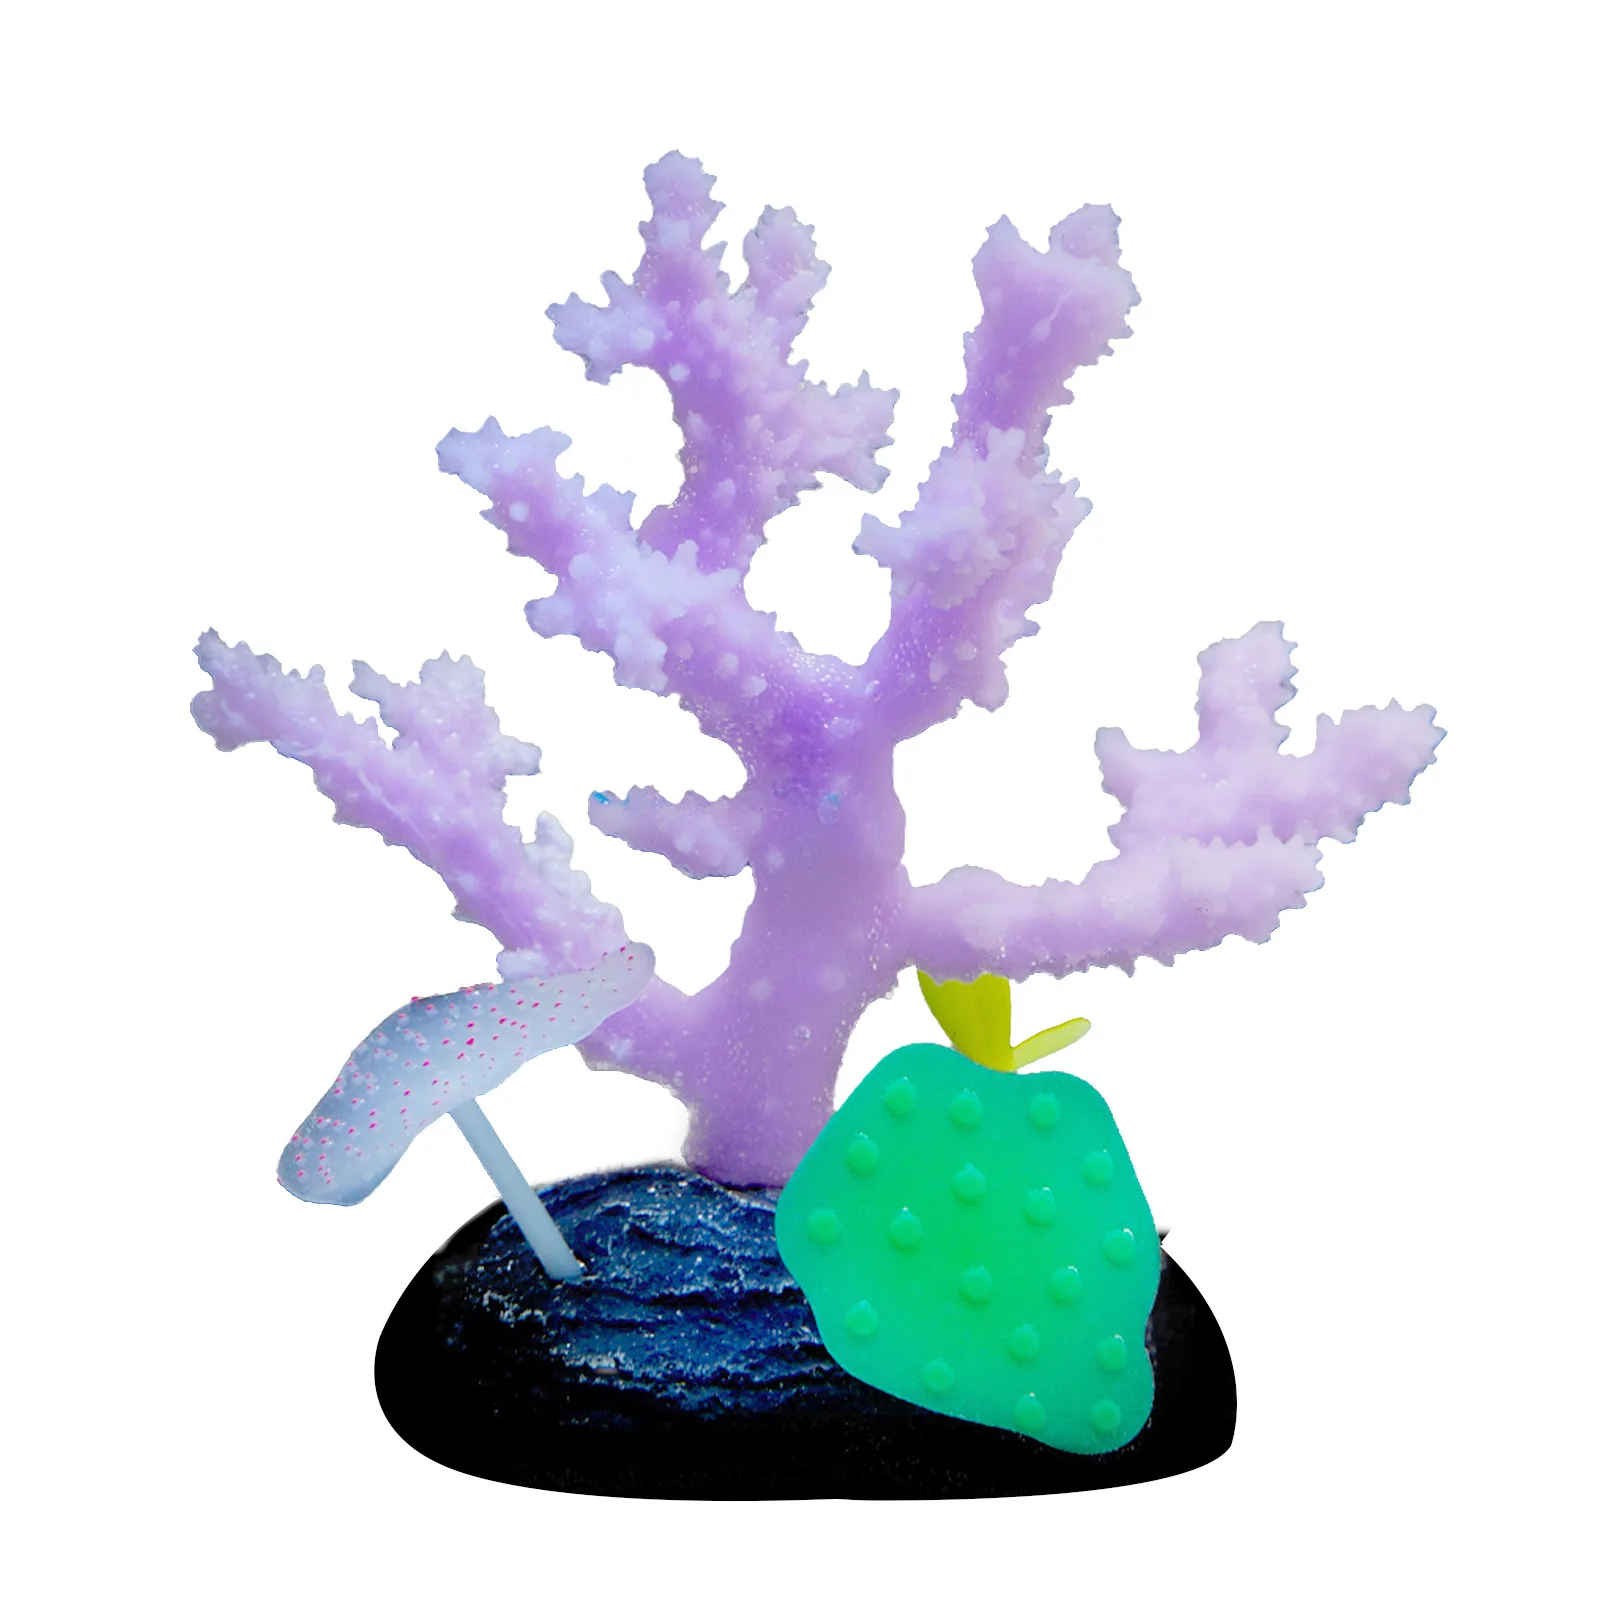 

Искусственный Коралл, подарок, имитация растения, силиконовое украшение для аквариума, поддельный светящийся эффект, морское ремесло, мног...